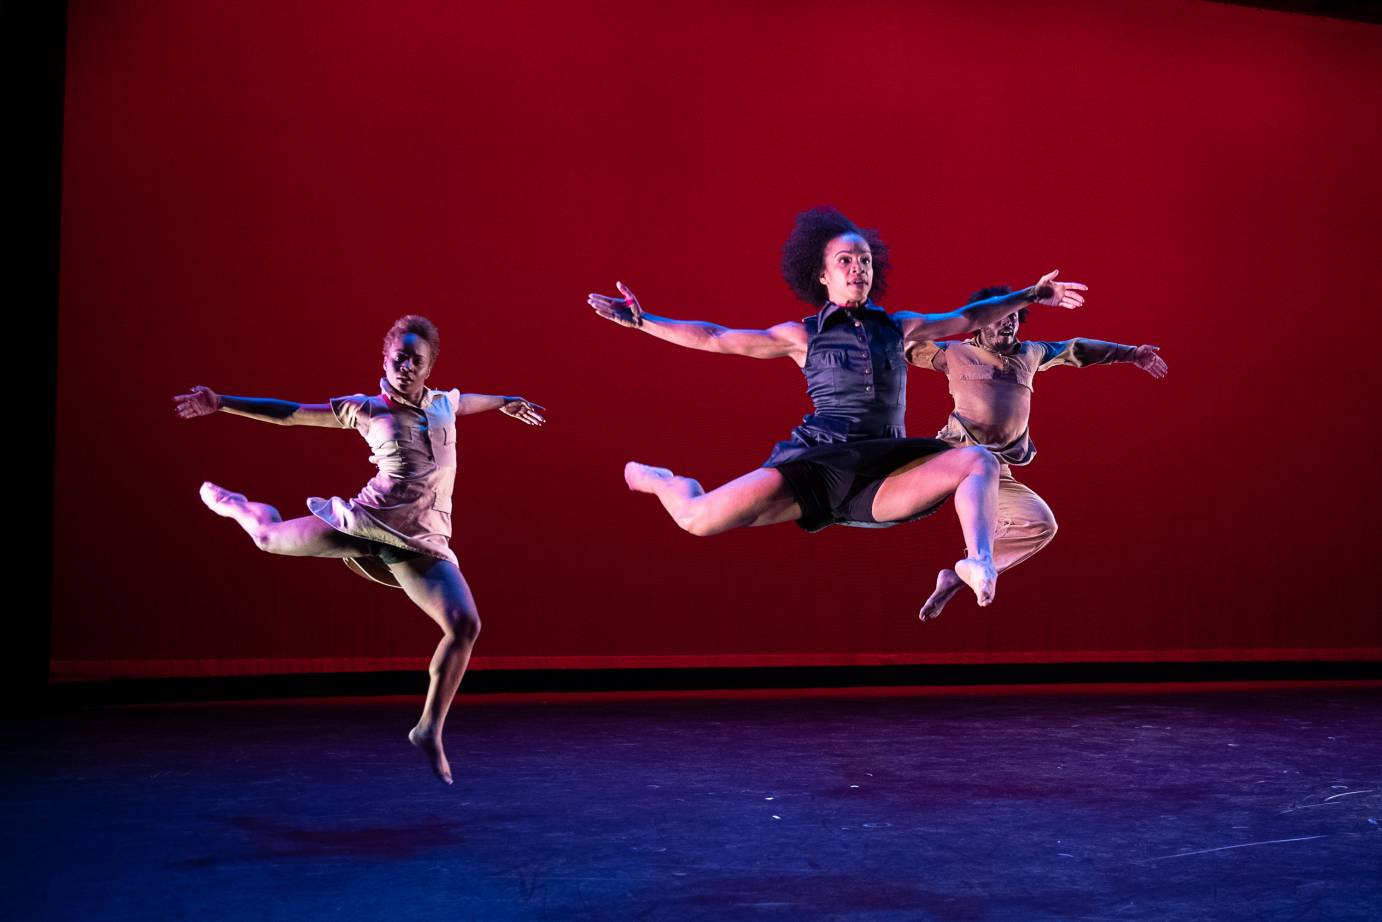 Three dancers soar through the air